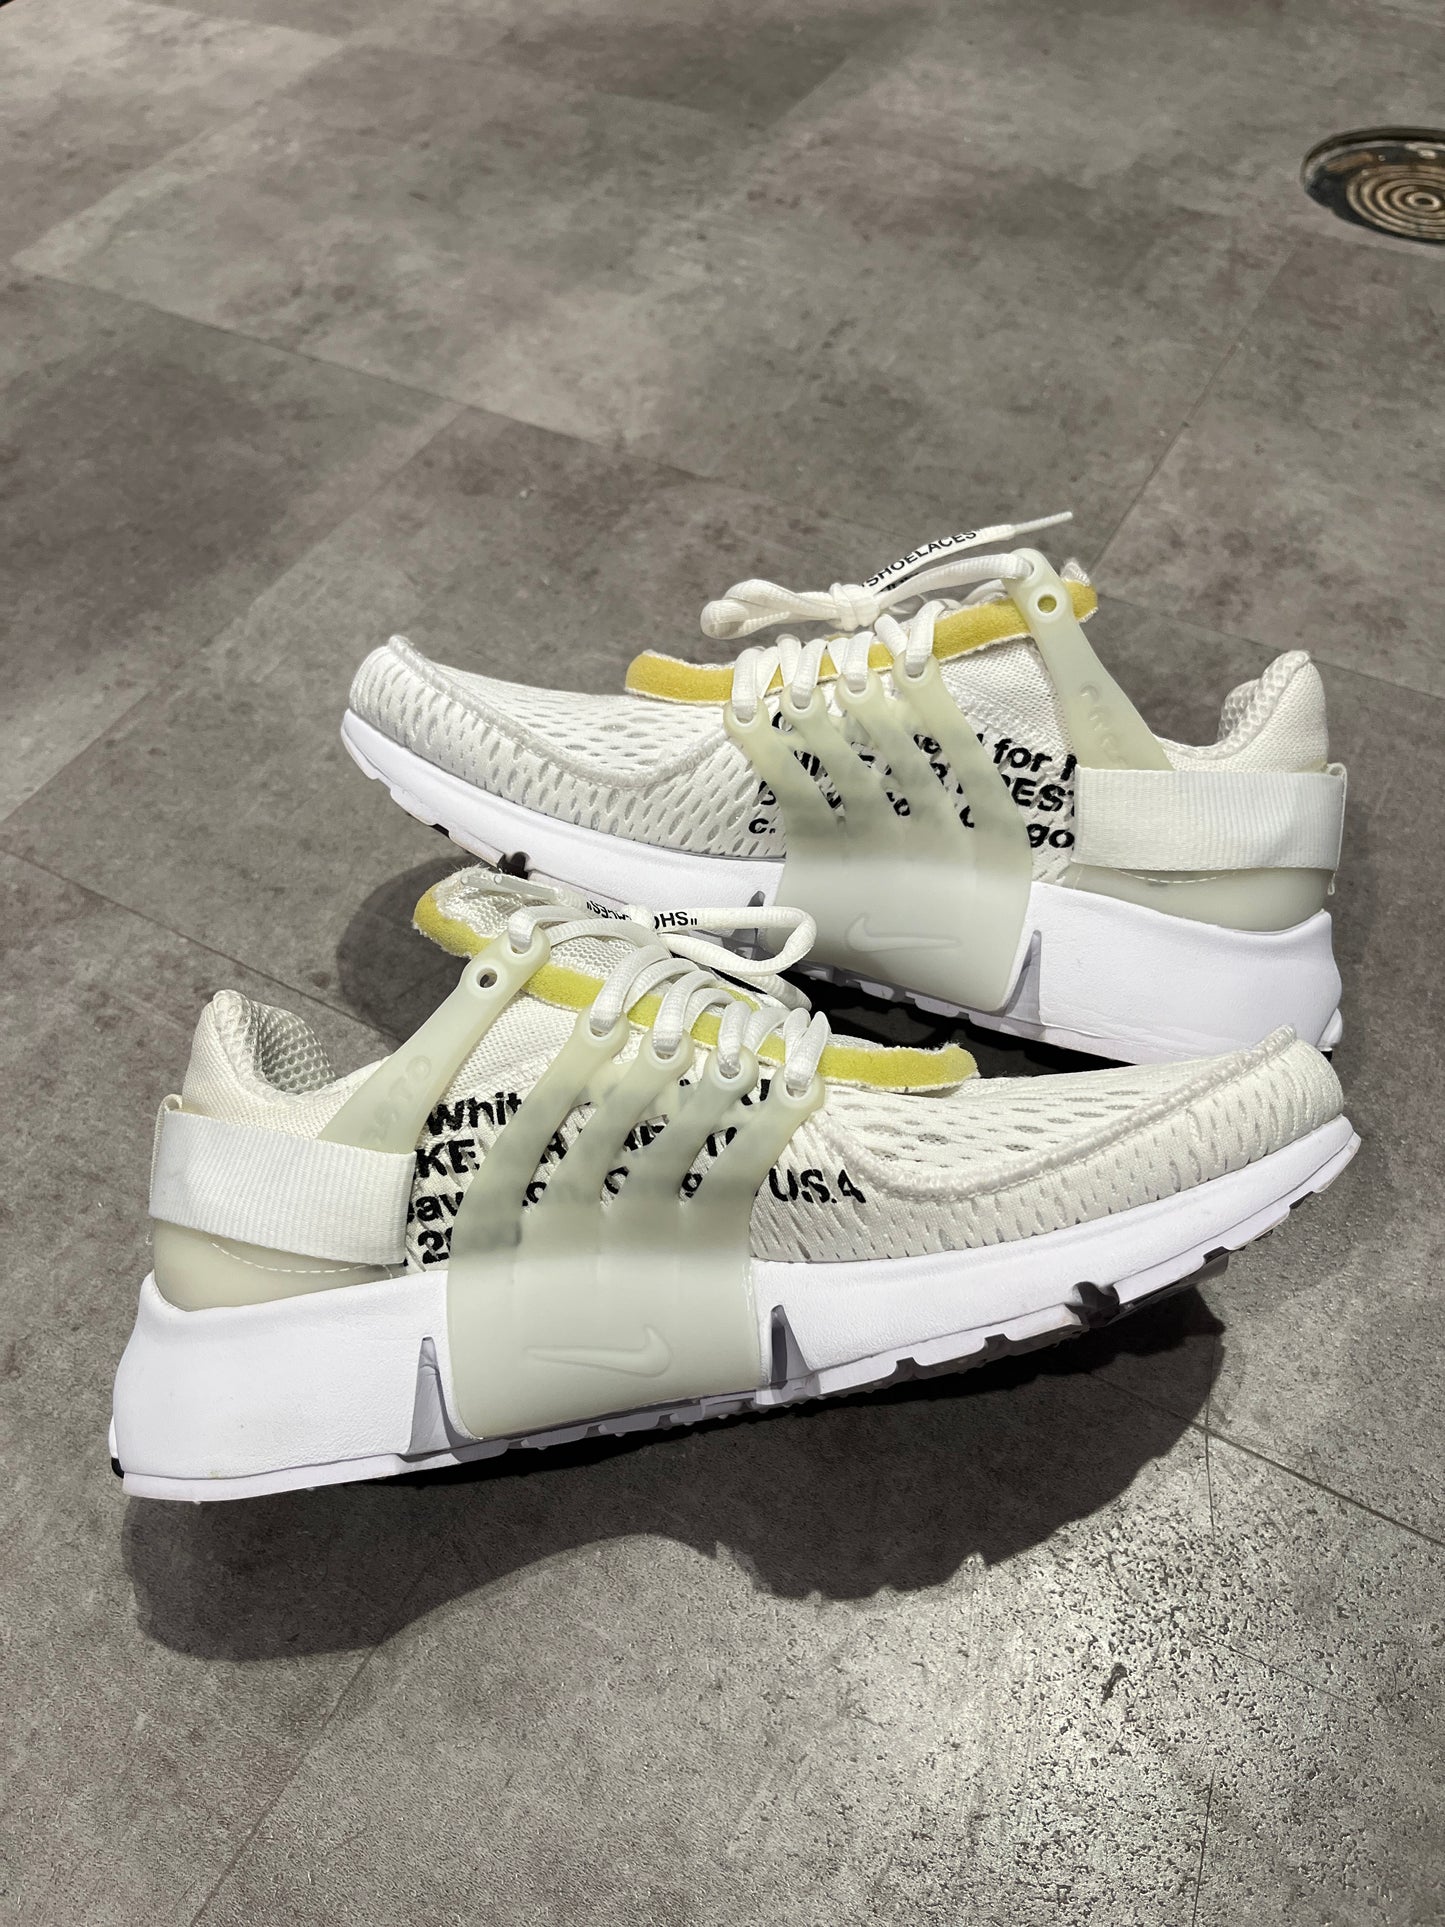 Nike X Off-White Air Presto White (2018) (Preowned Size 9)